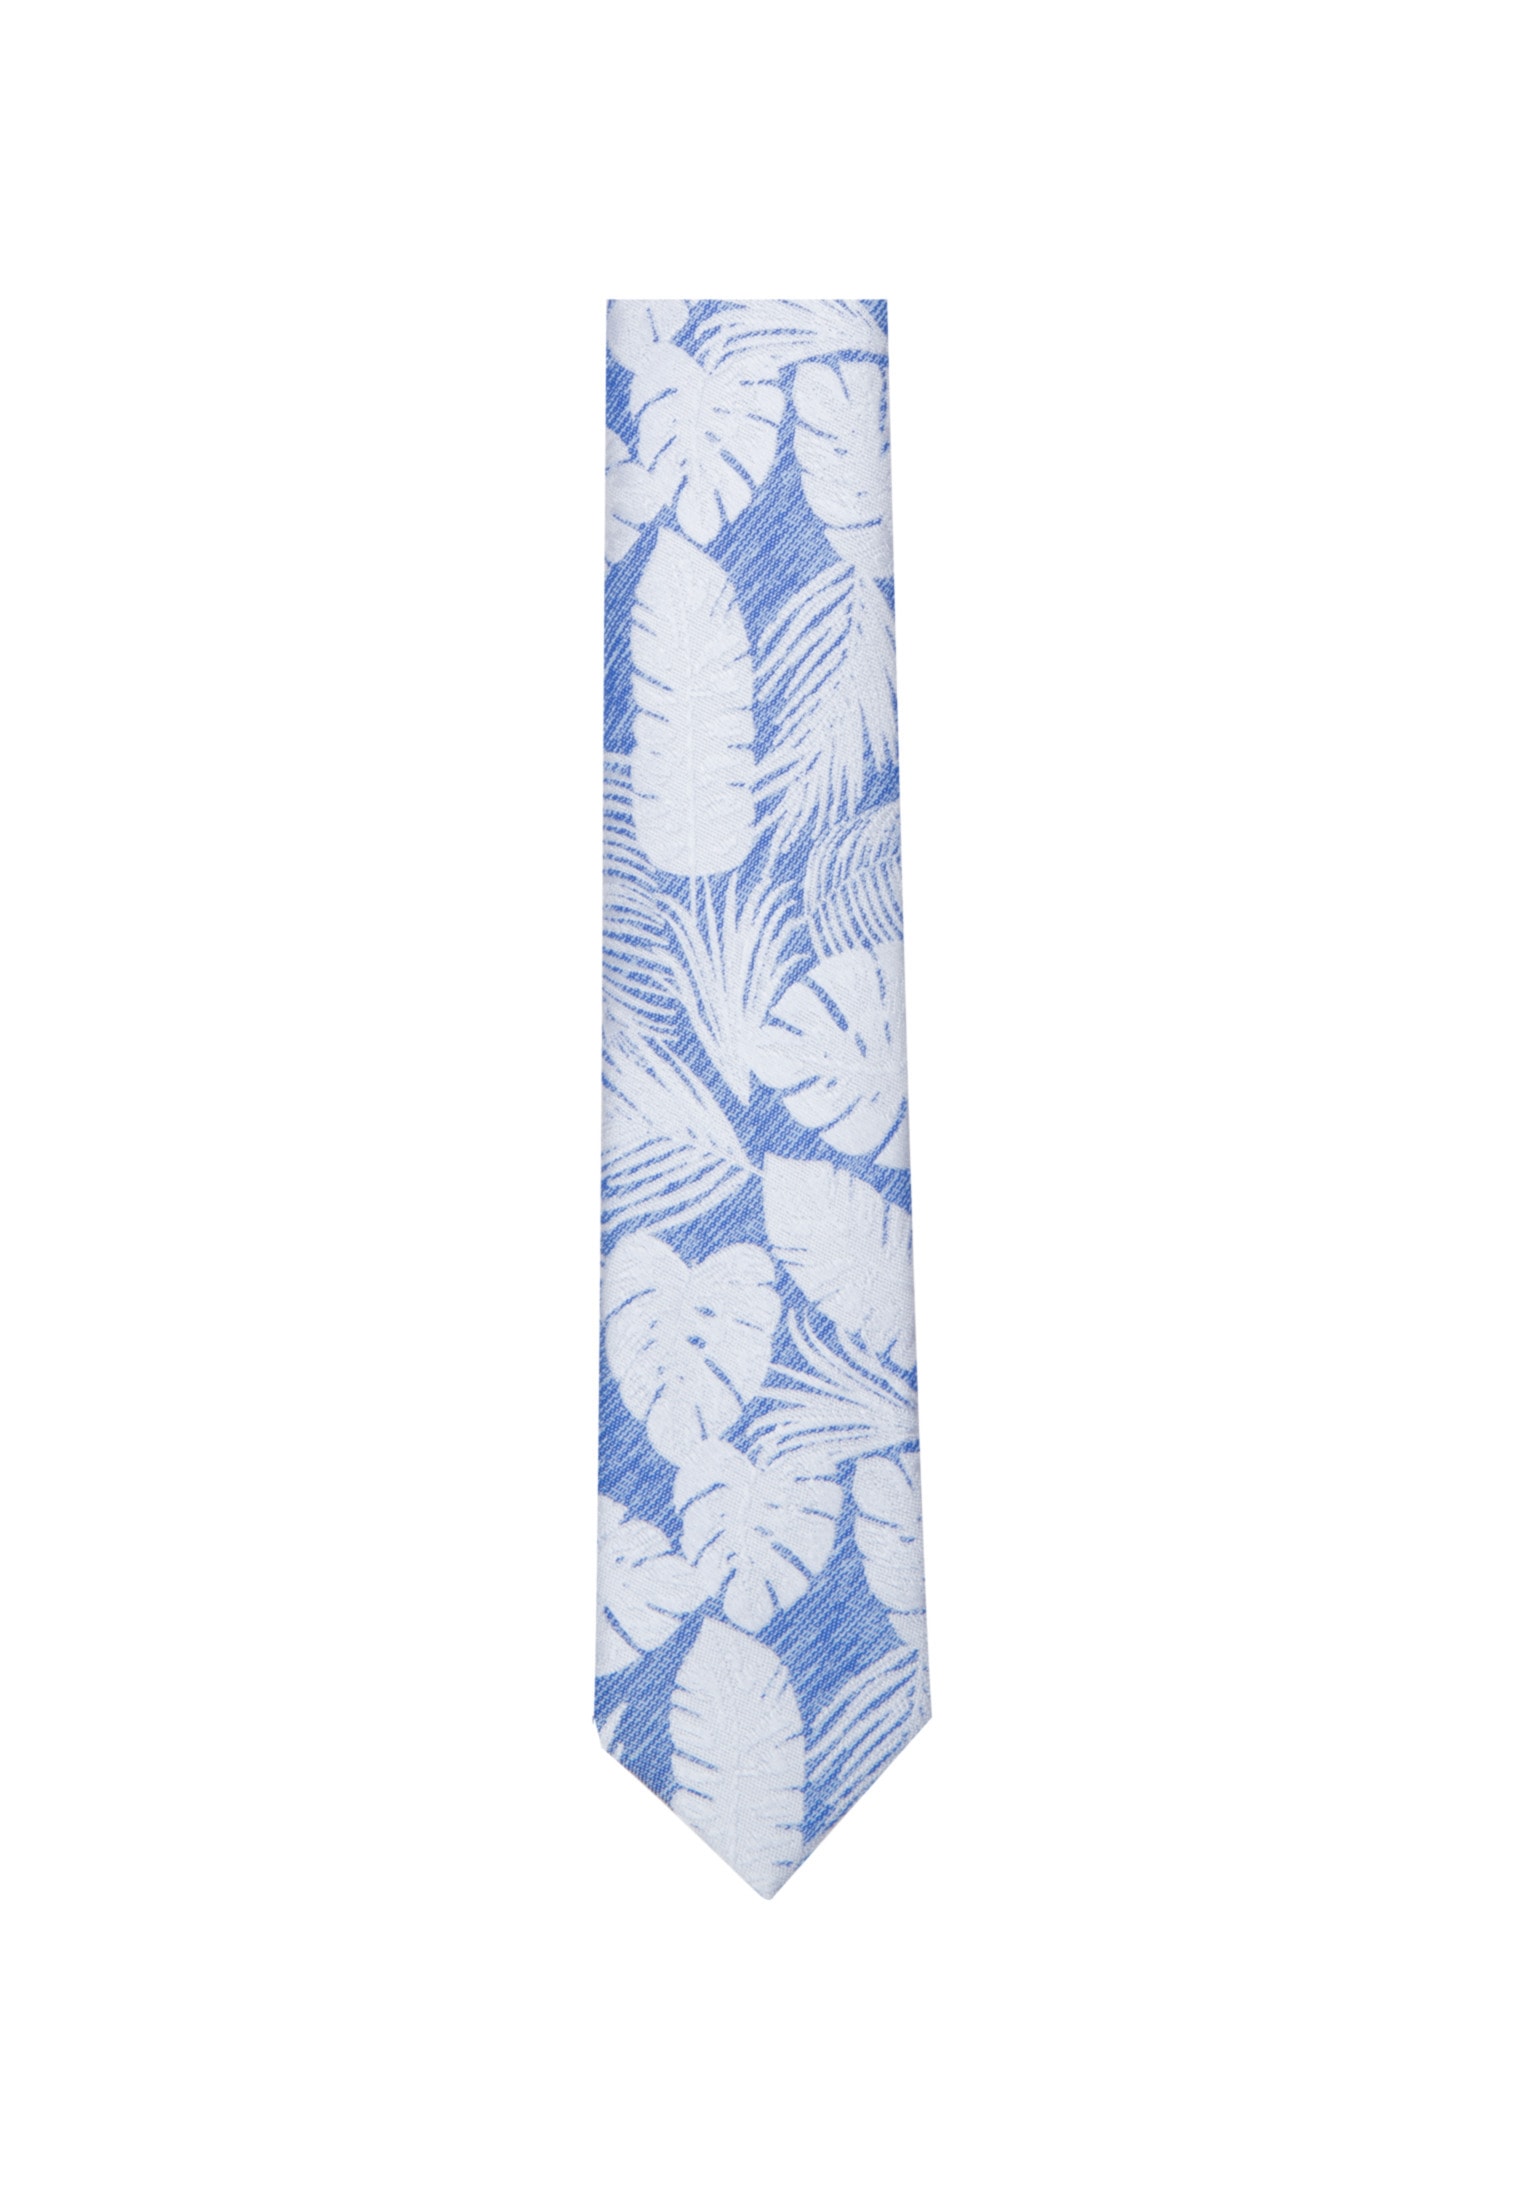 OTTO bestellen online Herren Krawatten Schmale bei Bequem